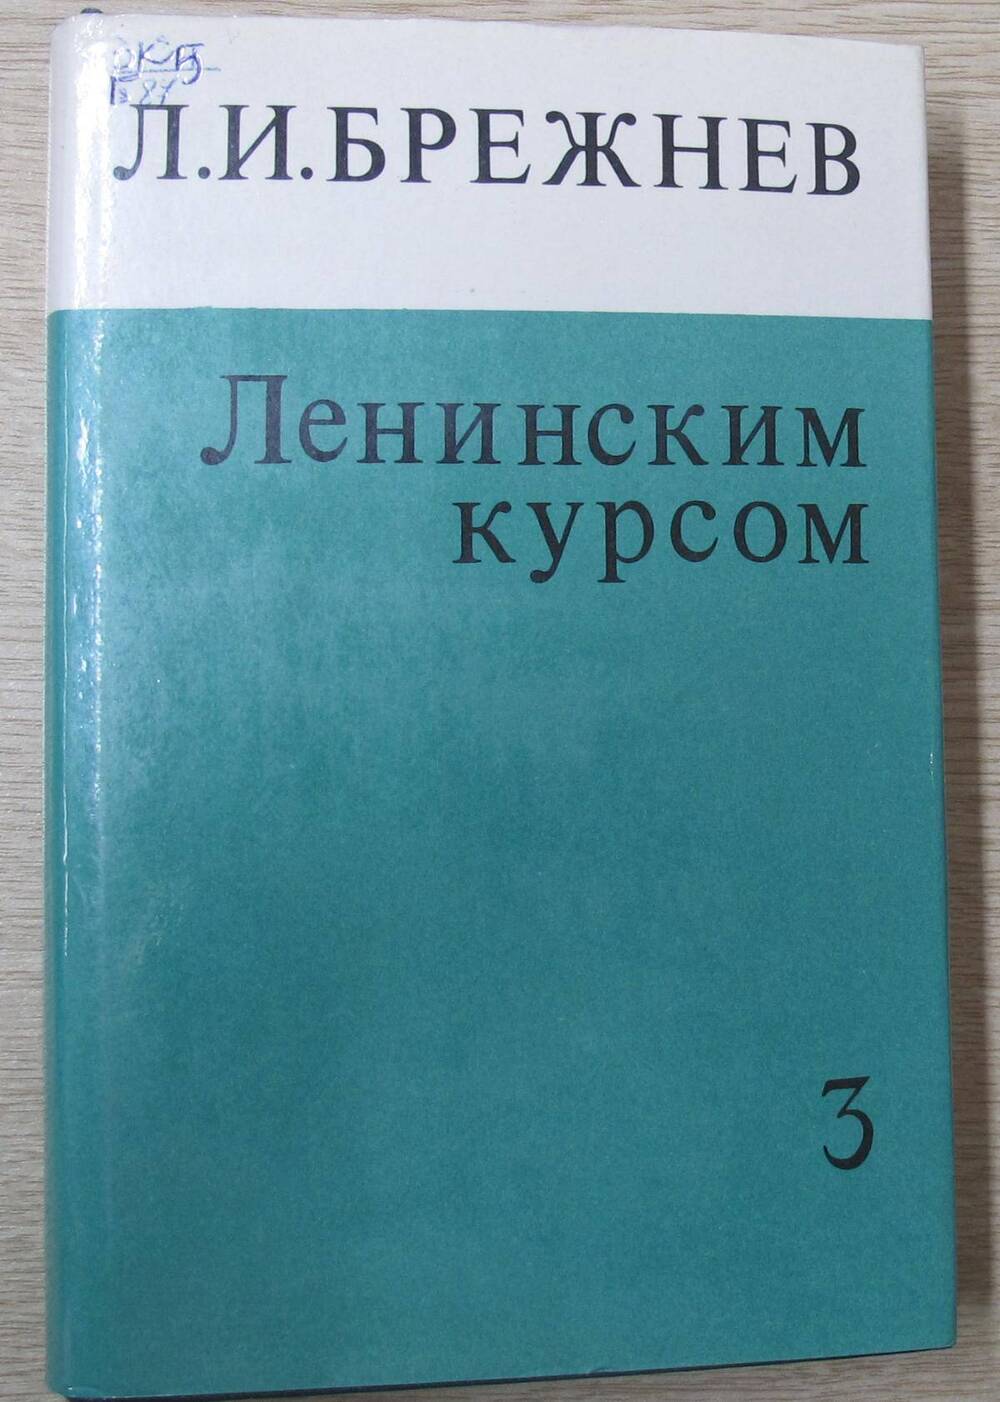 Книга Ленинским курсом. Речи и статьи. Том 3.